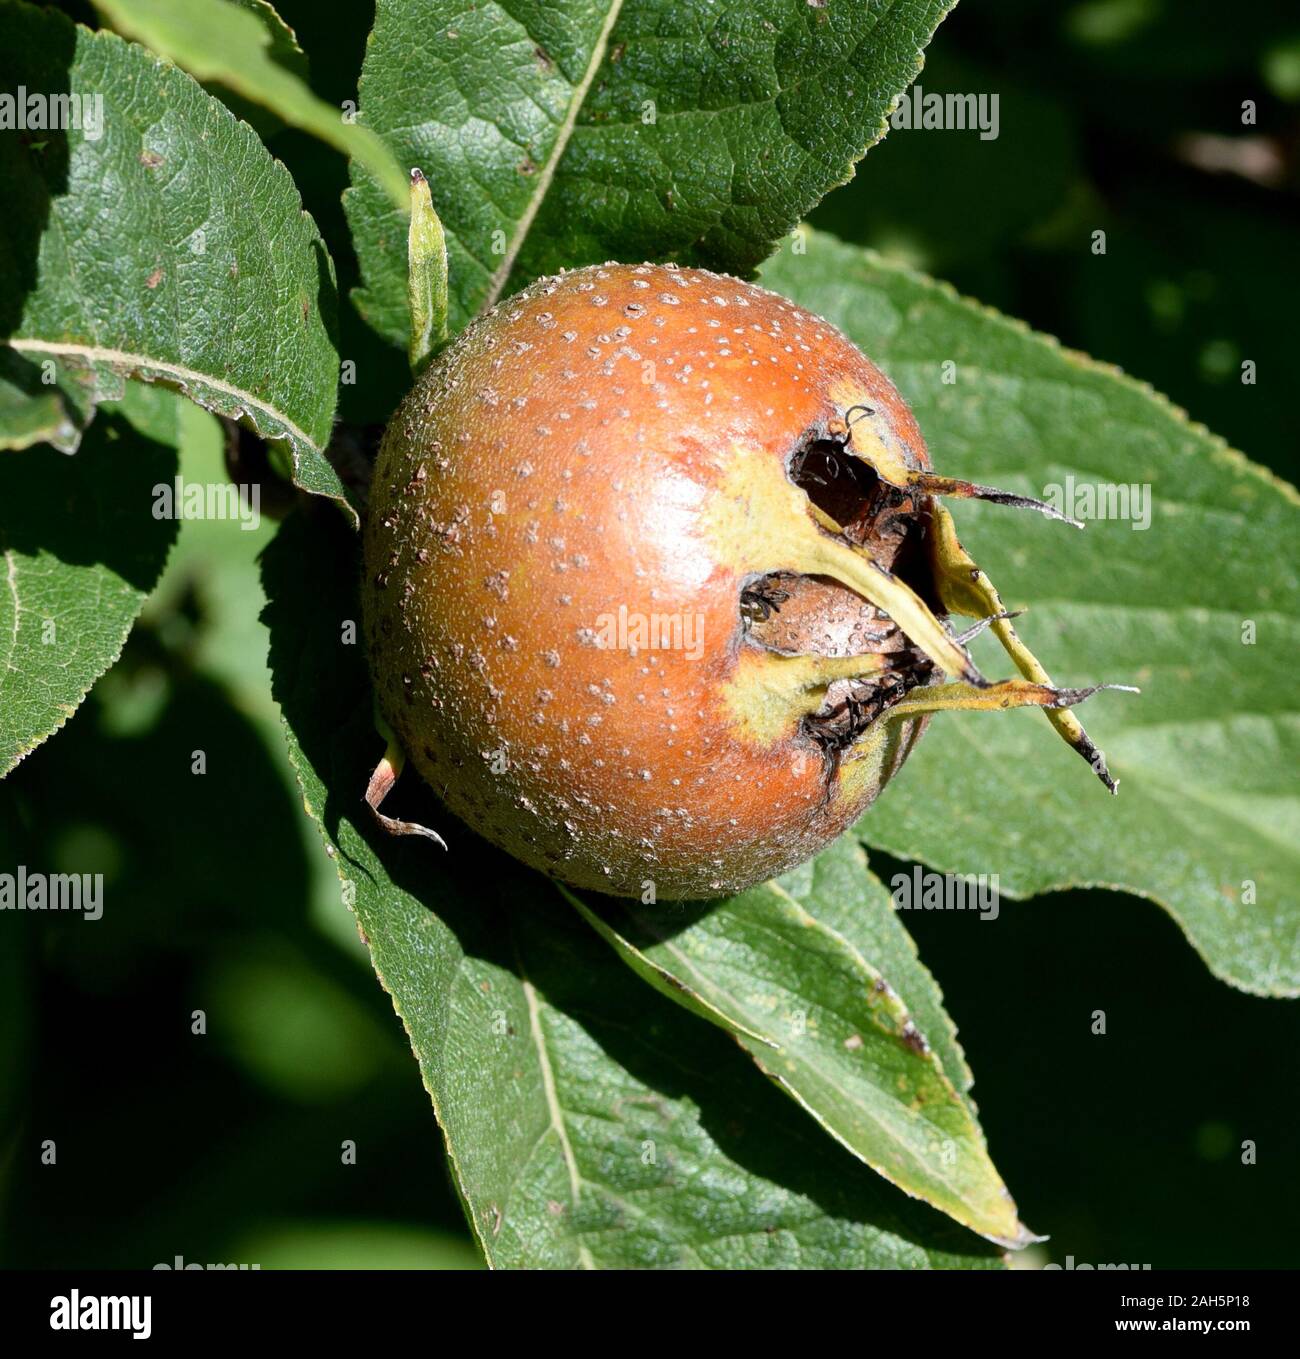 Mispel, Mespilus germanica, ist ein sommergruener Baum mit krummem Stamm und breiter Krone, der essbare Fruechte traegt. Medlar, Mespilus germanica, i Stock Photo